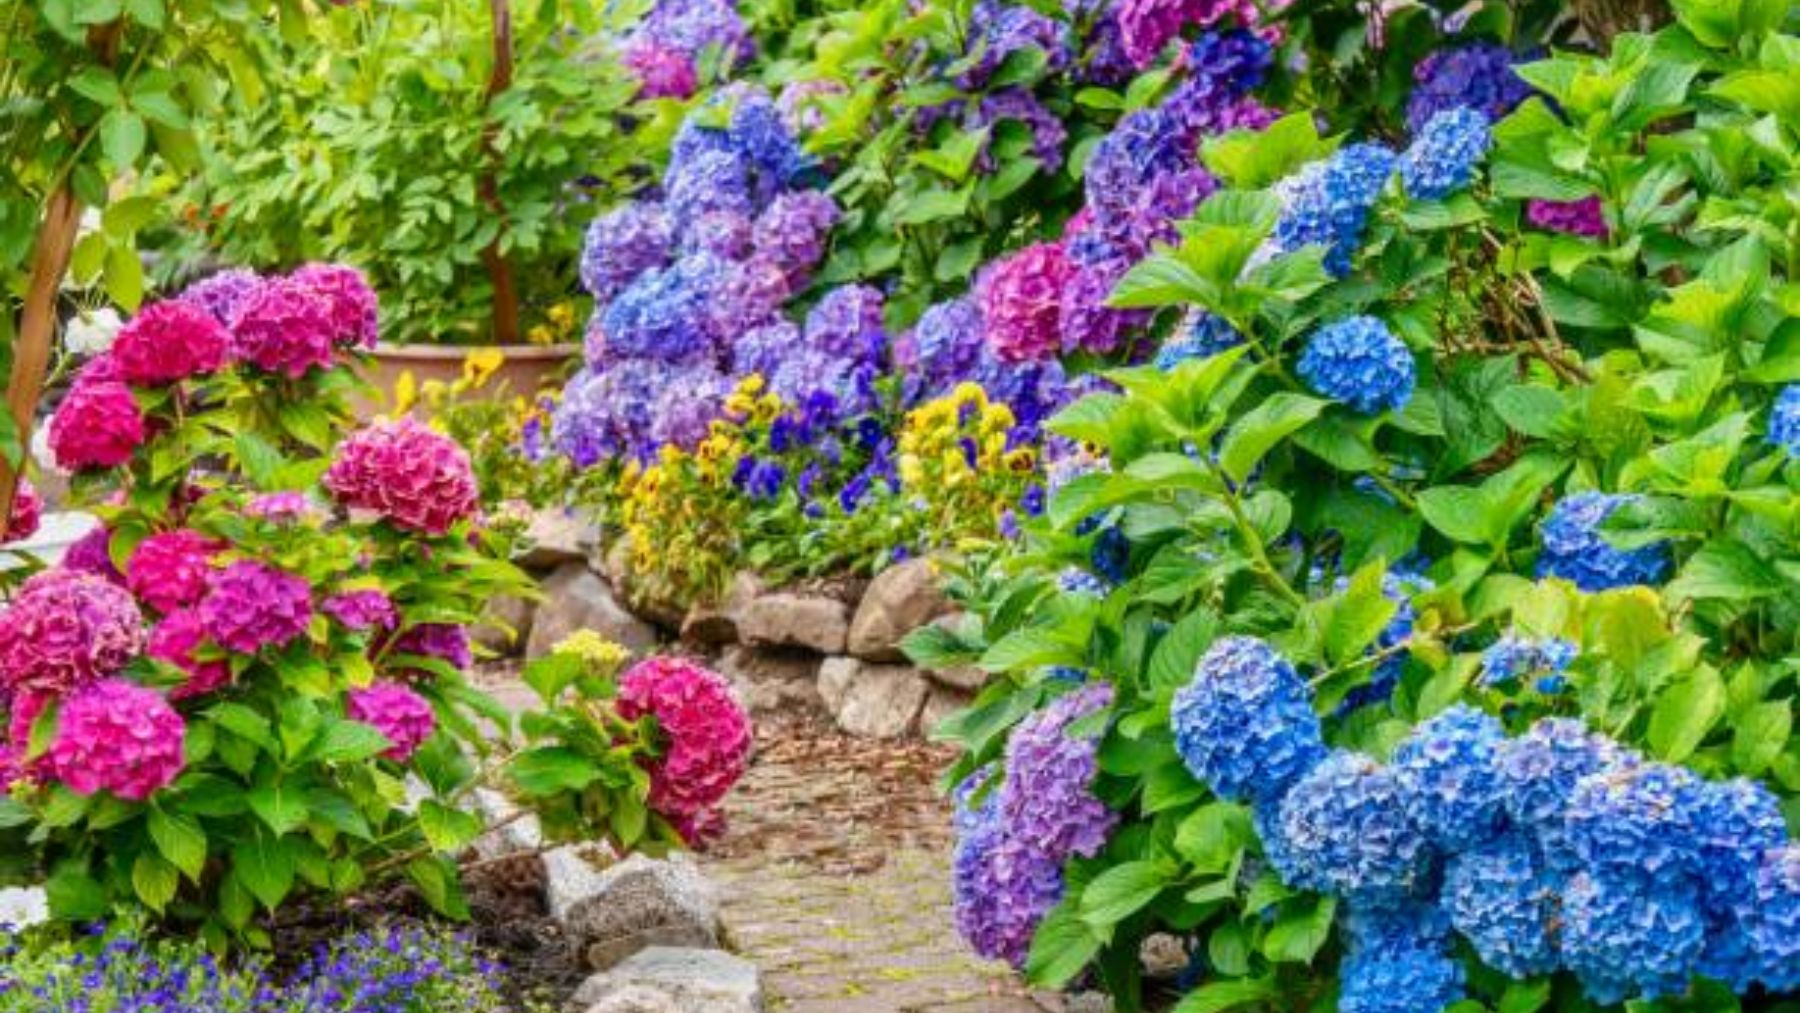 Verano 2022: 12 flores de verano para decorar tu casa y jardín